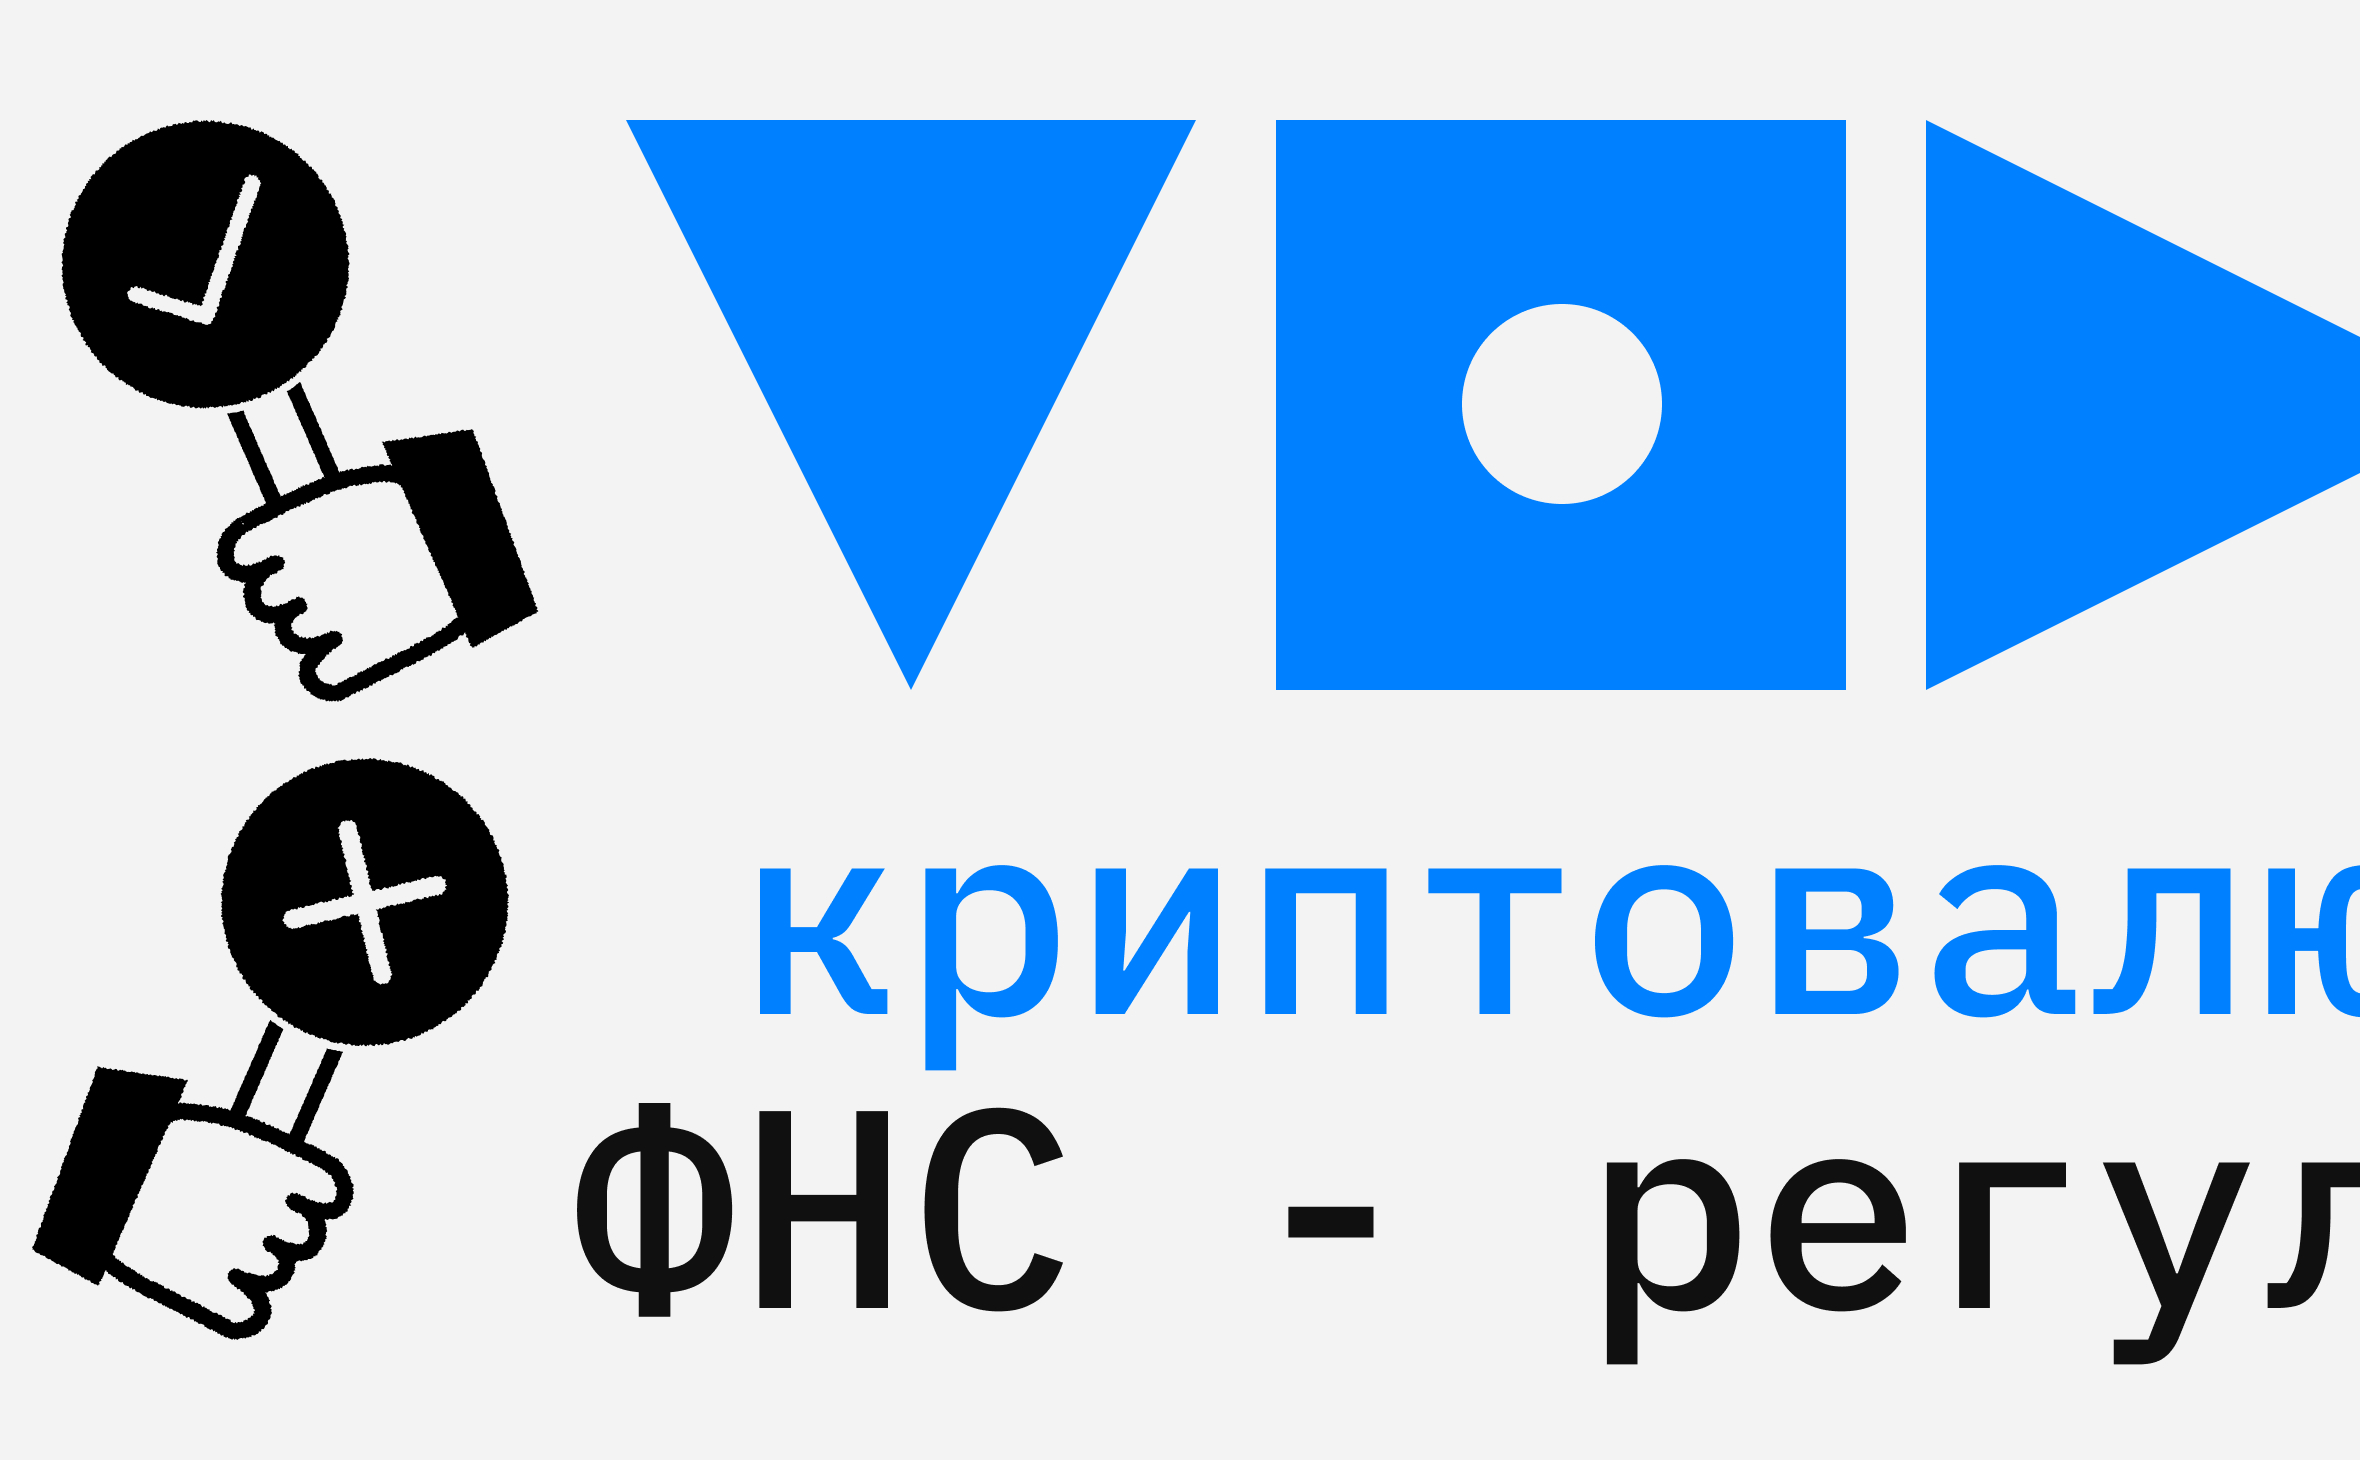 Моисеев: ФНС станет «интерфейсом» для криптовалютной отрасли в России